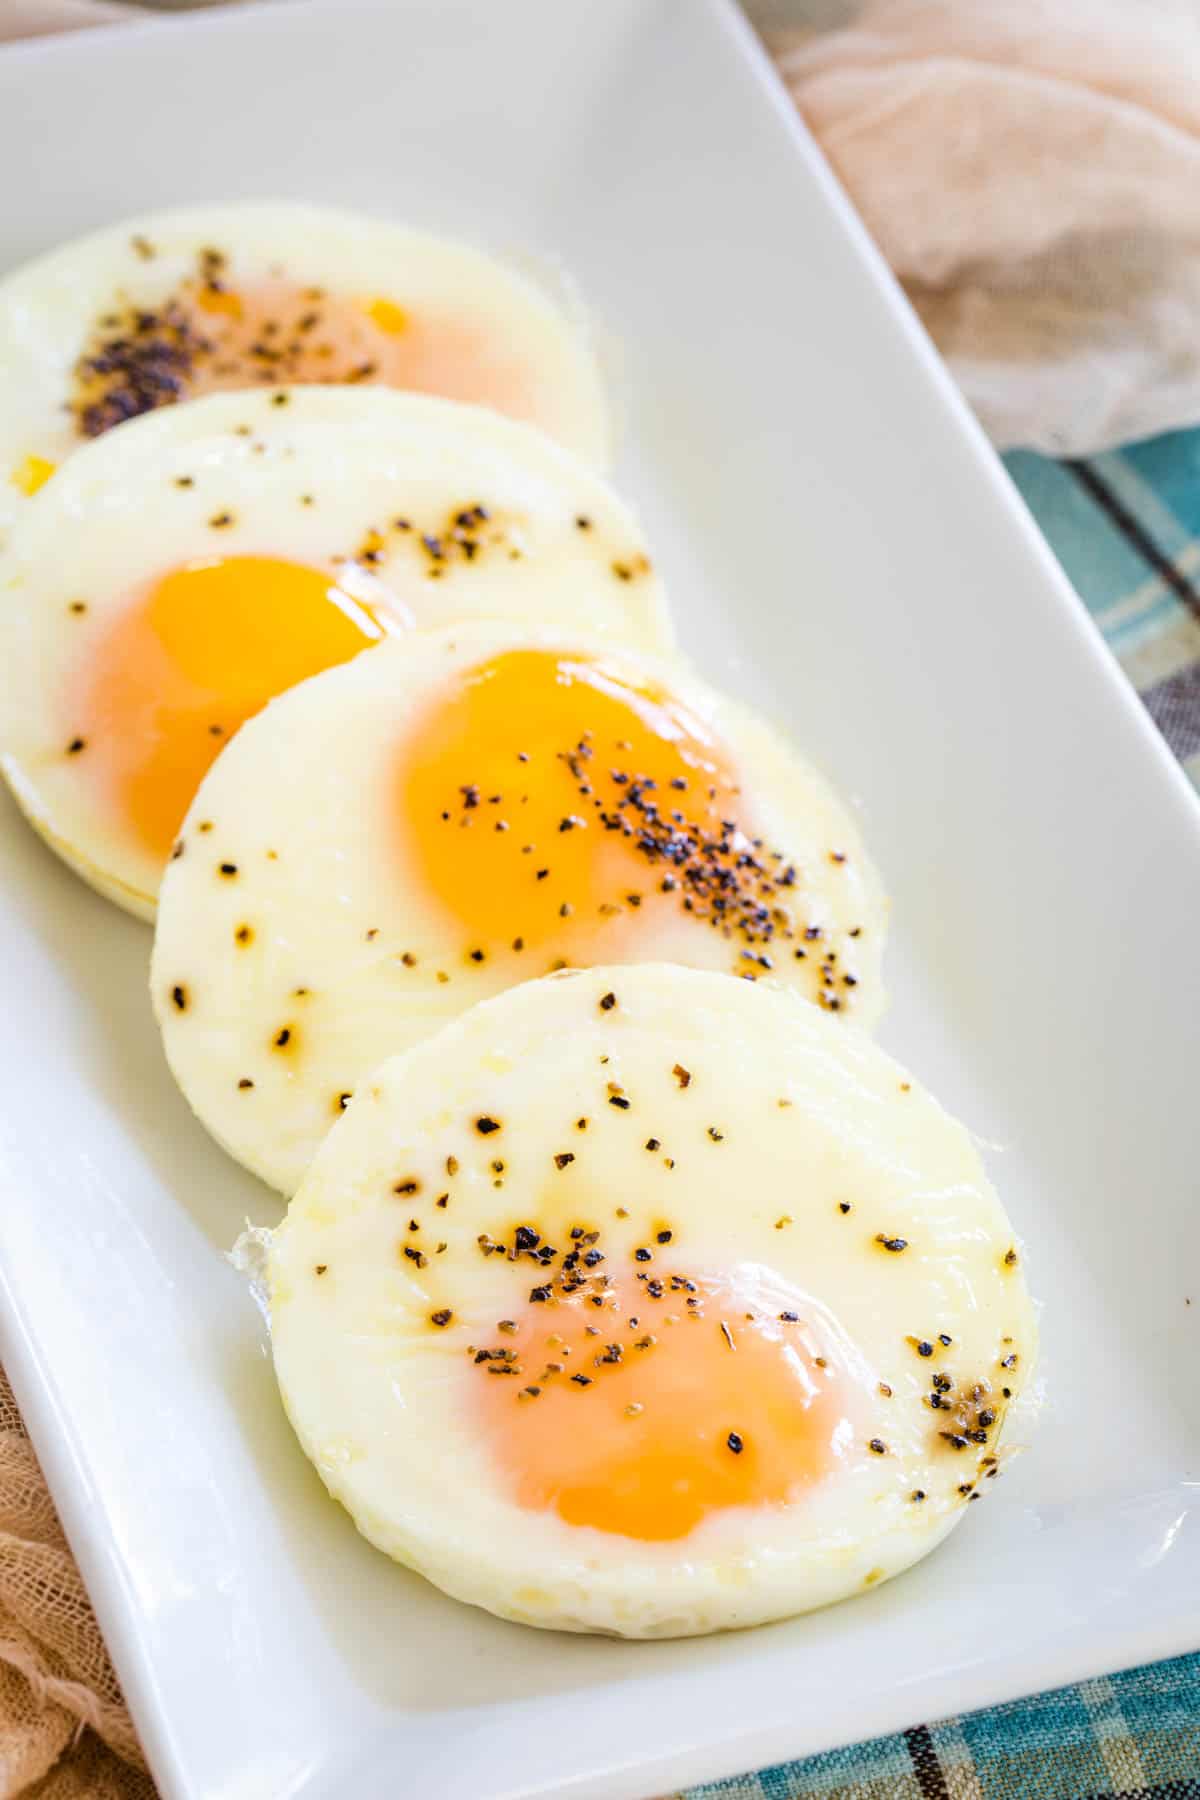 A rectangular platter of seasoned baked eggs.